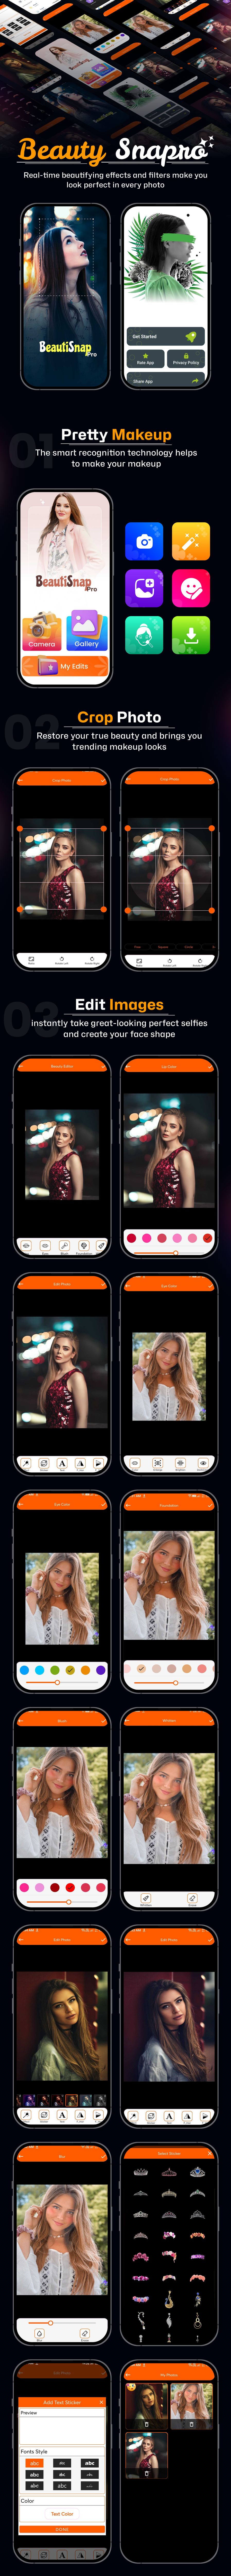 Beauty Snap Pro - Selfi Beauty Camera - Admob - Android App - 1